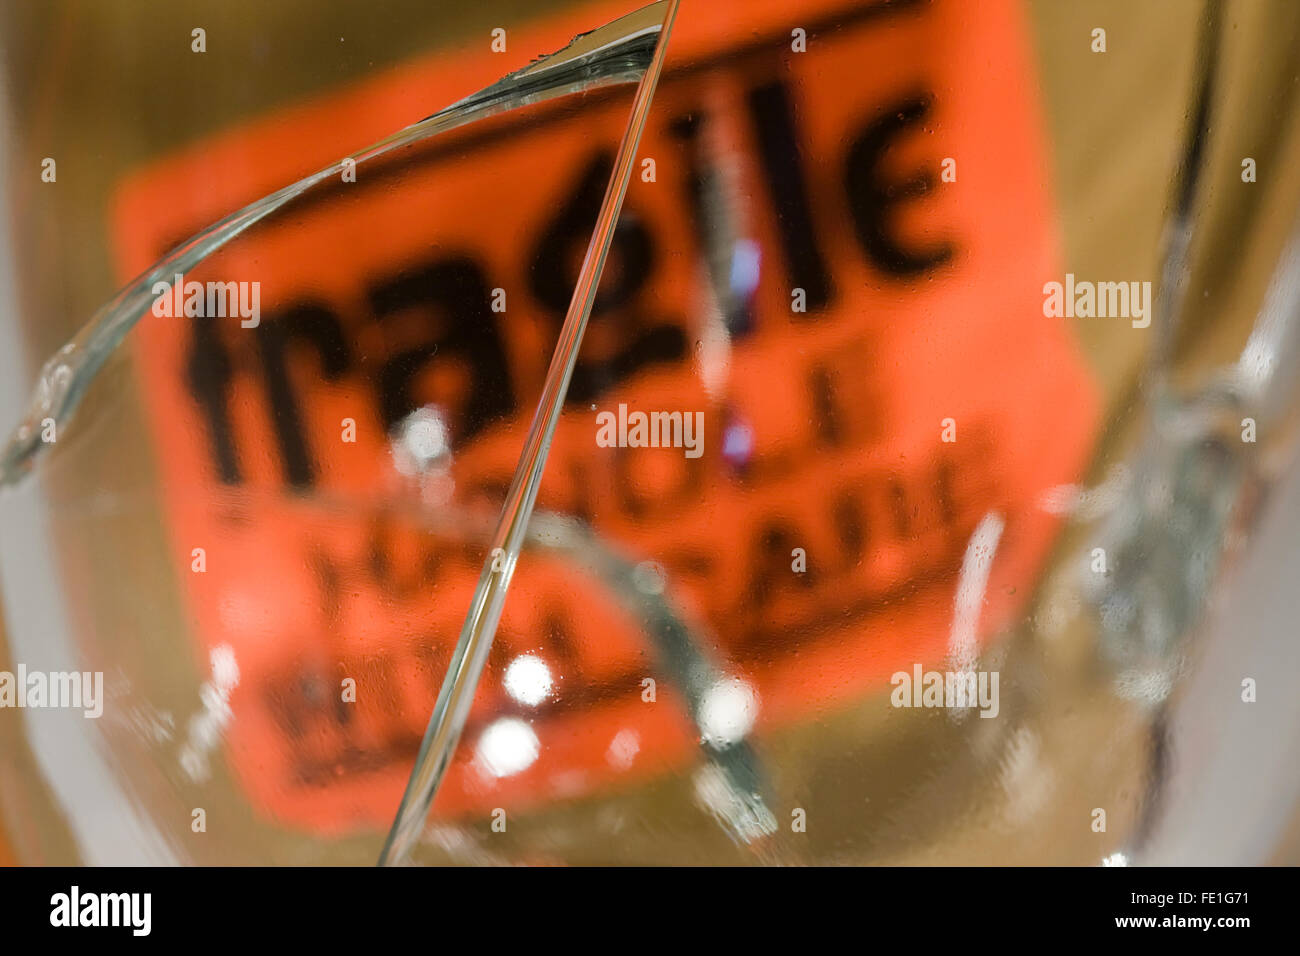 Melden Sie grossen Riss im Glas vor einer Orange "Fragile Handle With Care" Stockfoto